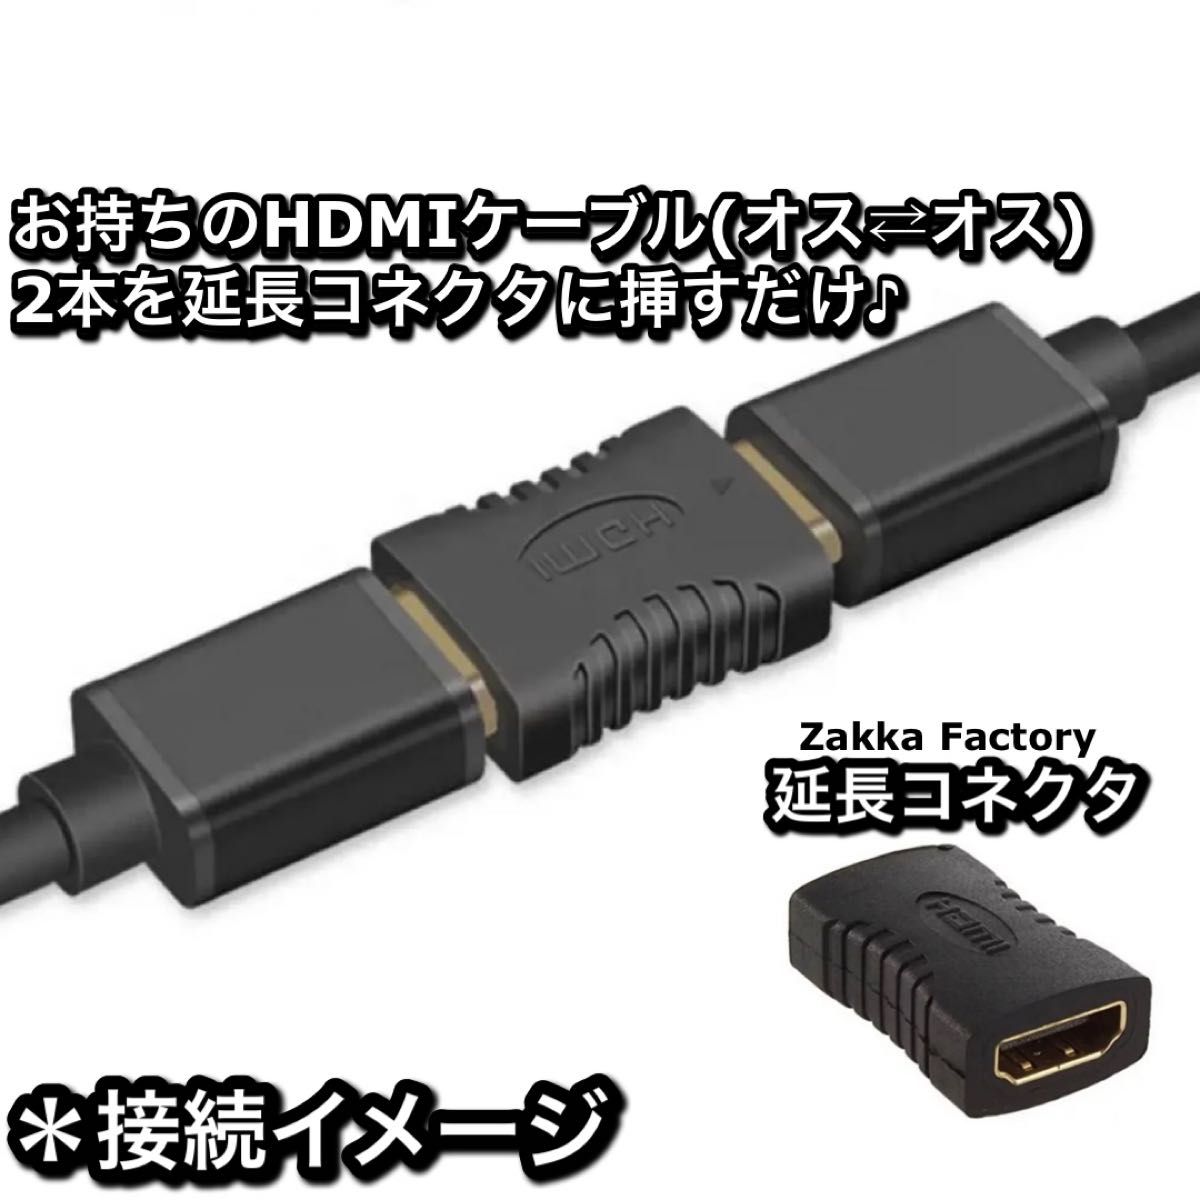 延長コネクタ 3m 4K HDMI ケーブル スイッチ PS3,4 TV テレビ モニター プロジェクター 対応 HDMIケーブル